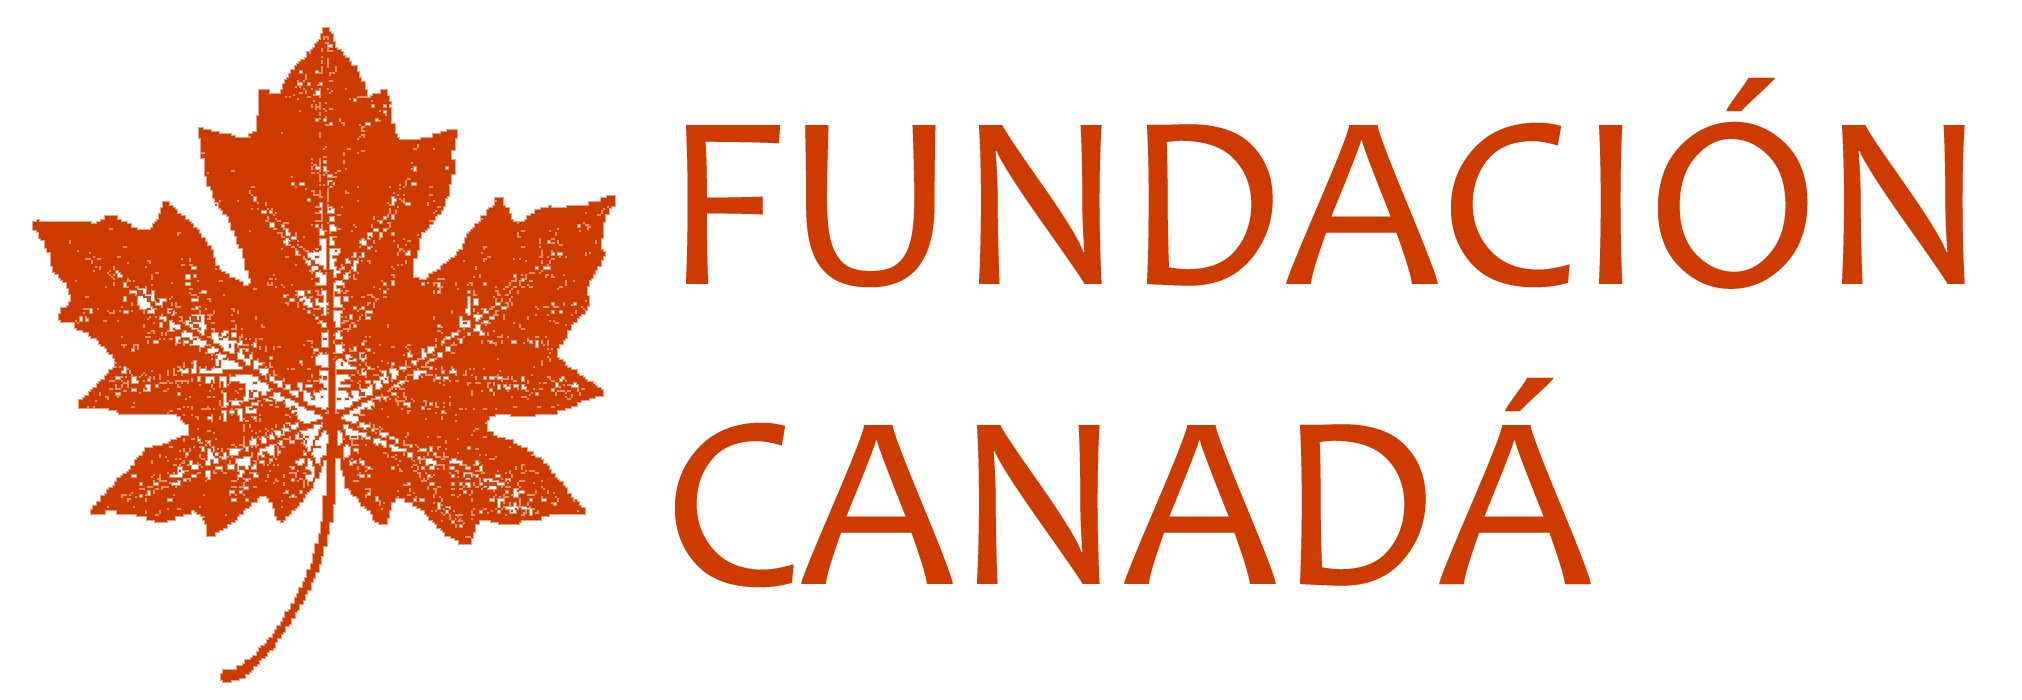 Fundación Canada